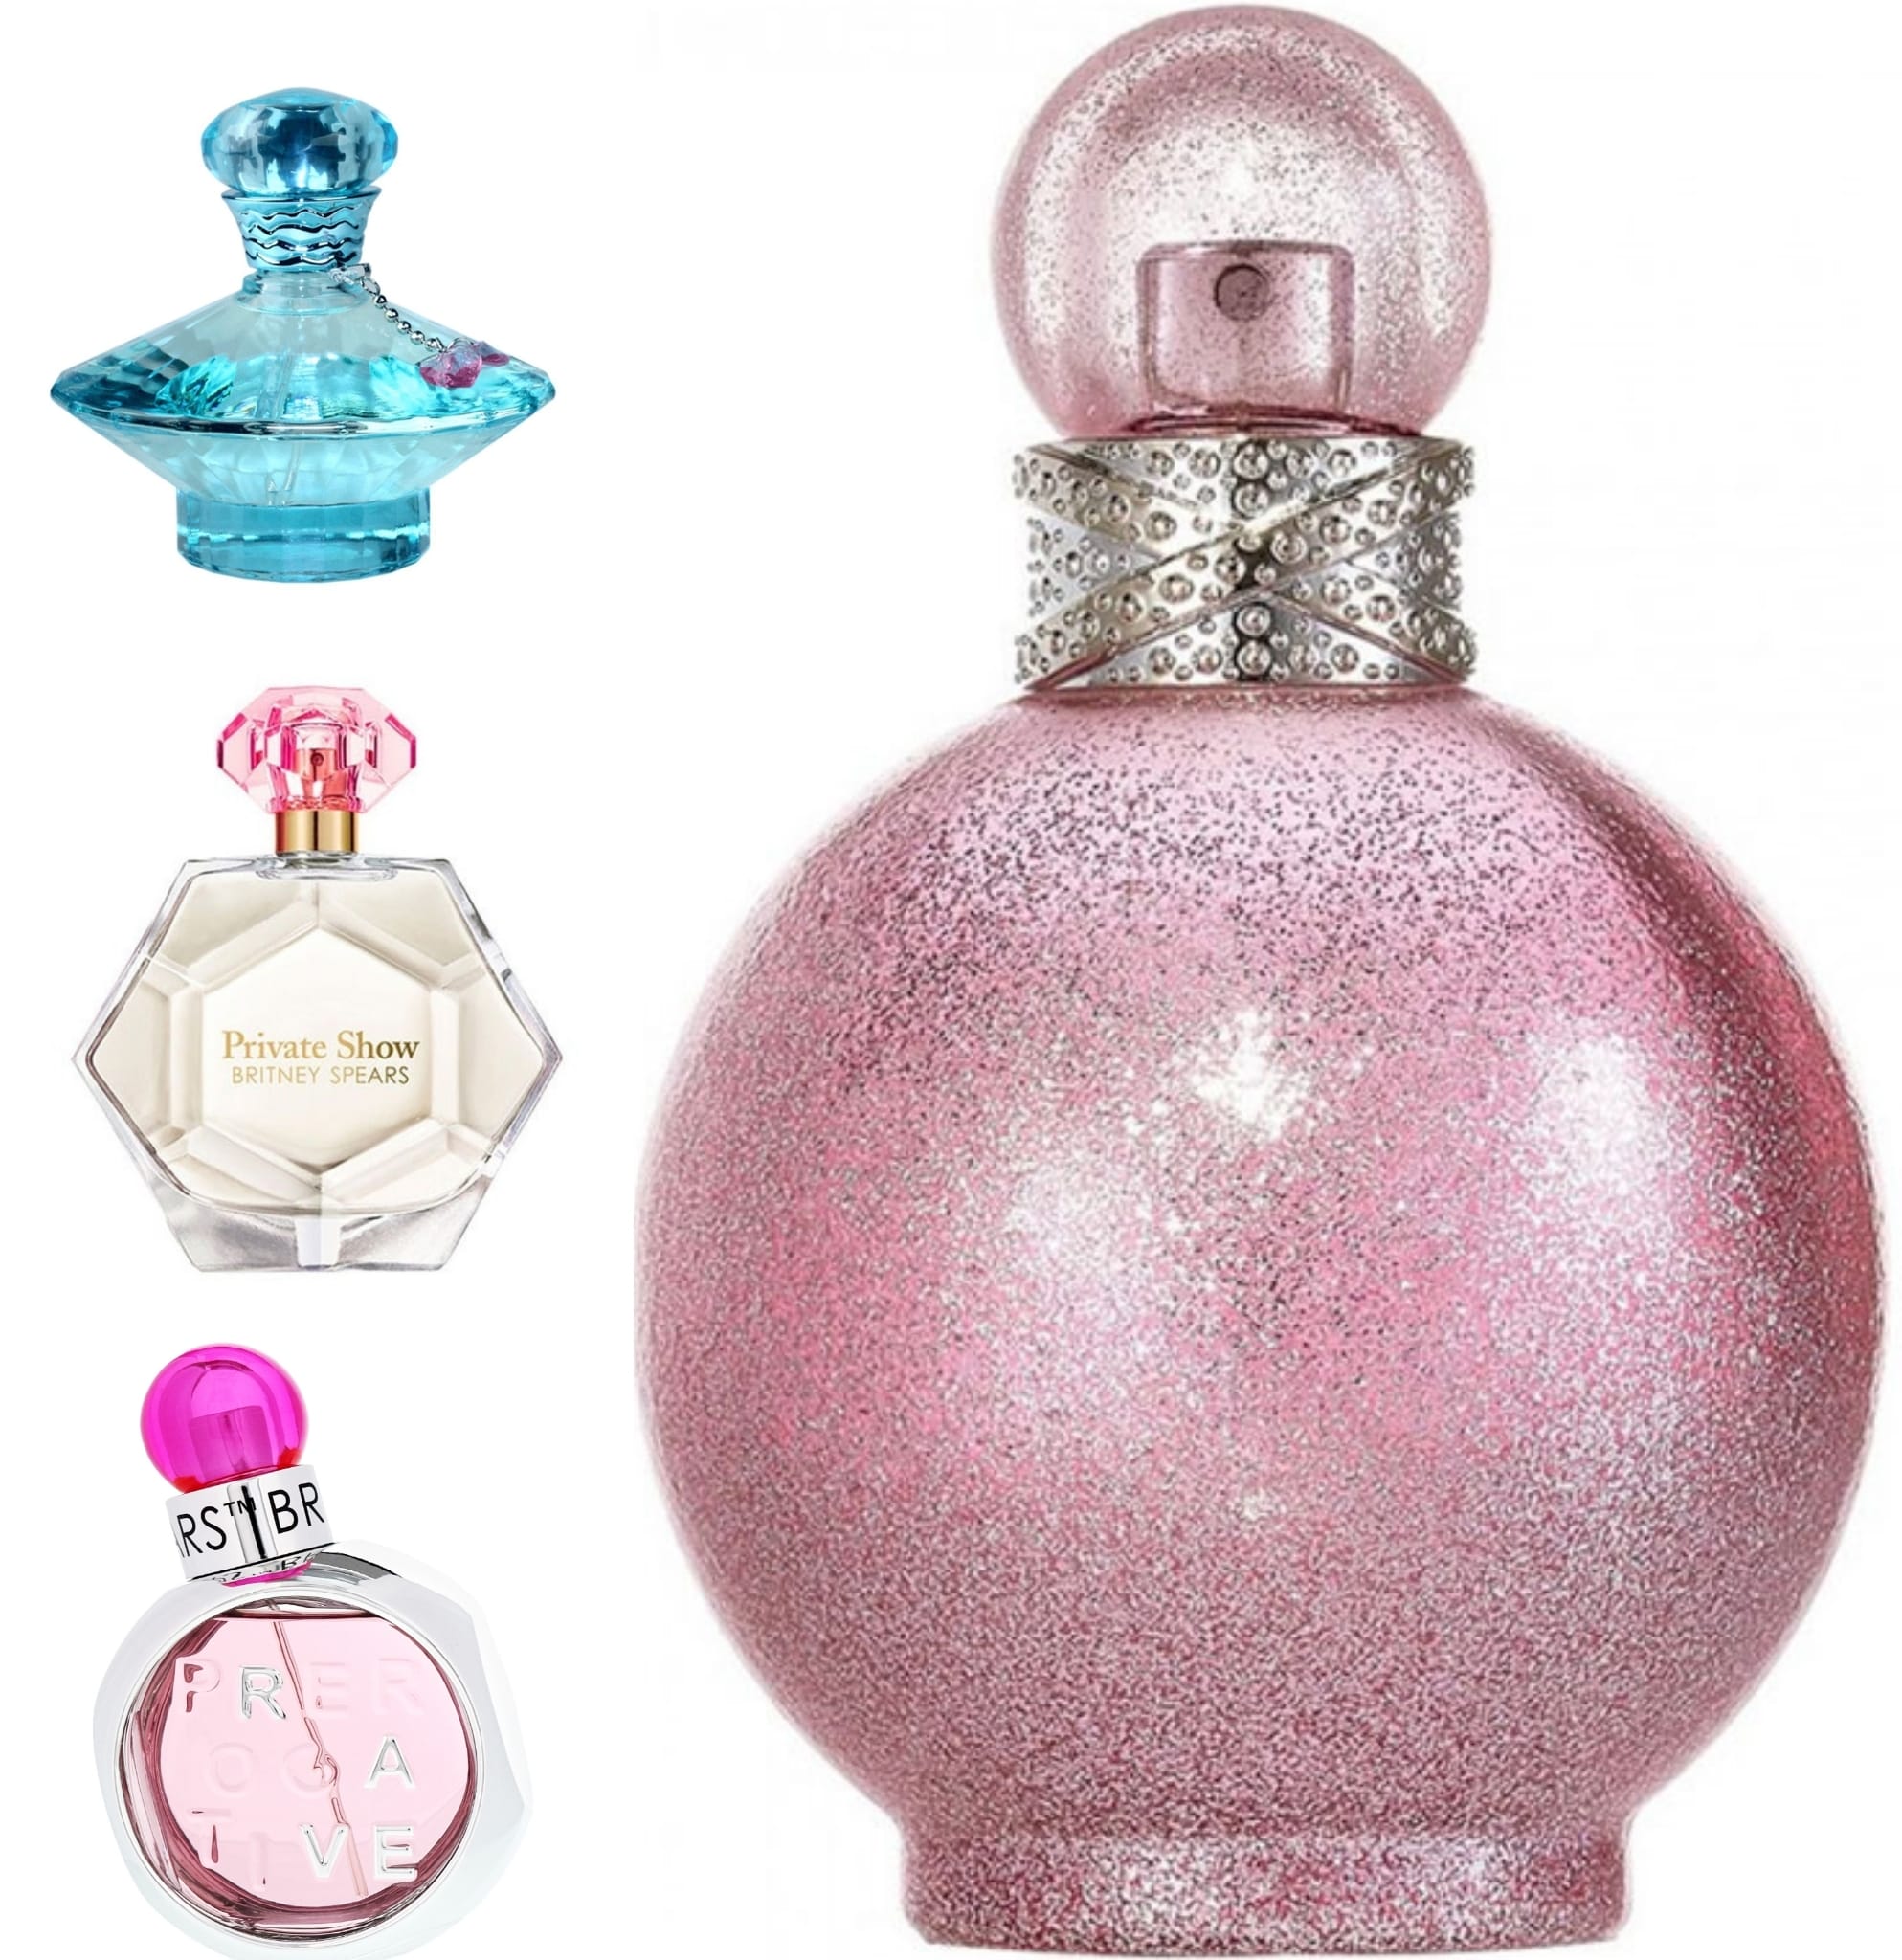 Topul celor mai apreciate 5 parfumuri create de Britney Spears din 2004 până în prezent